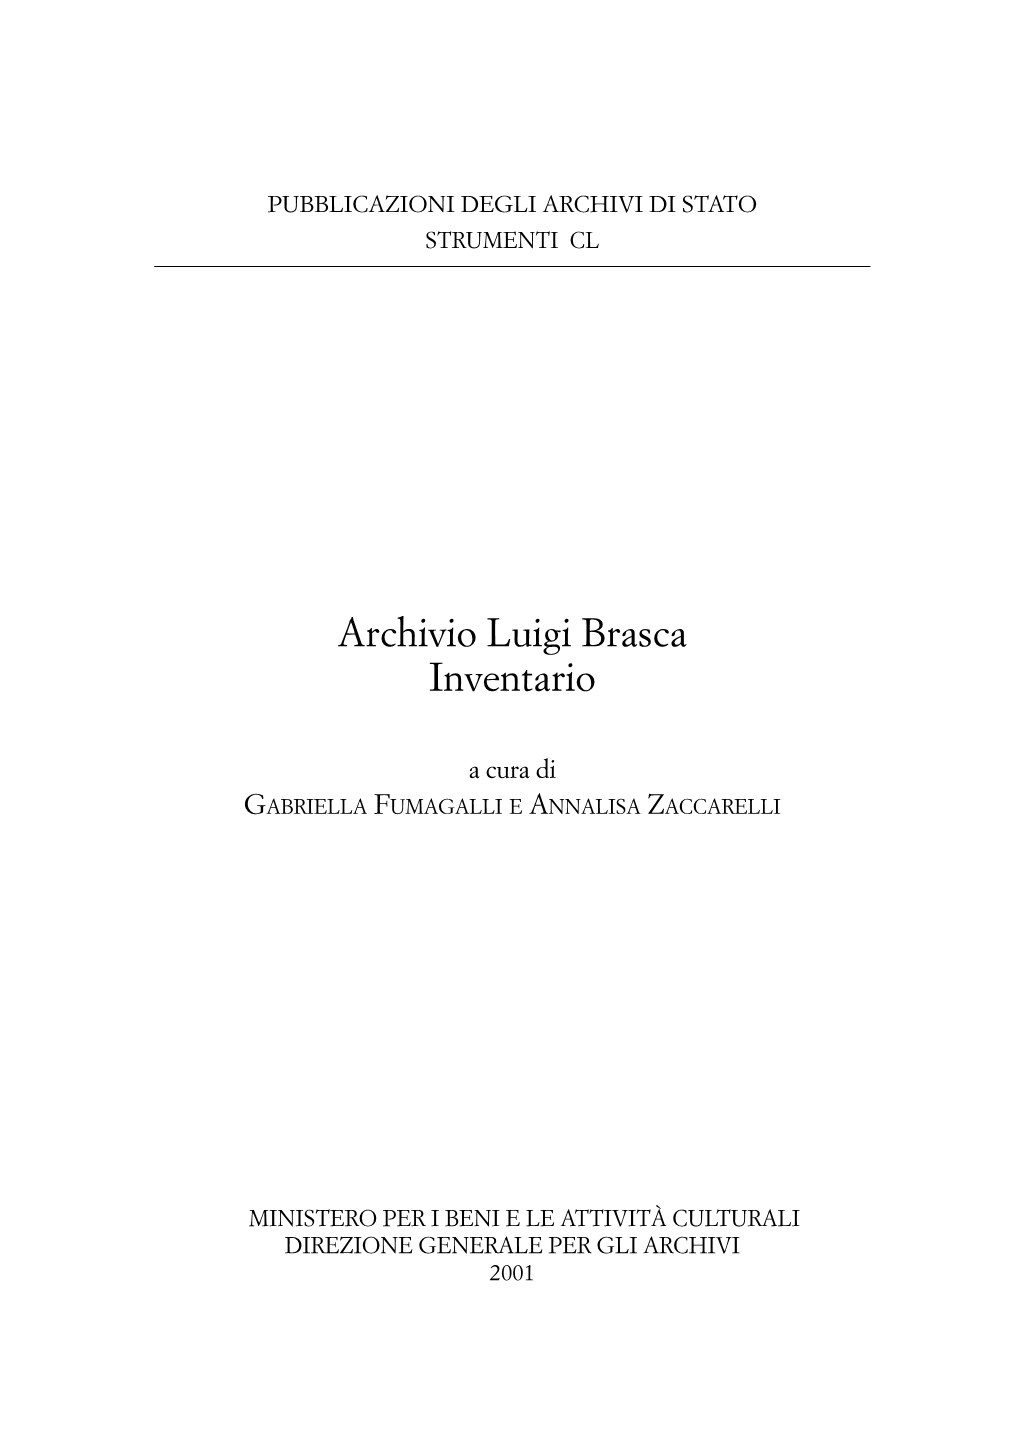 Archivio Luigi Brasca. Inventario